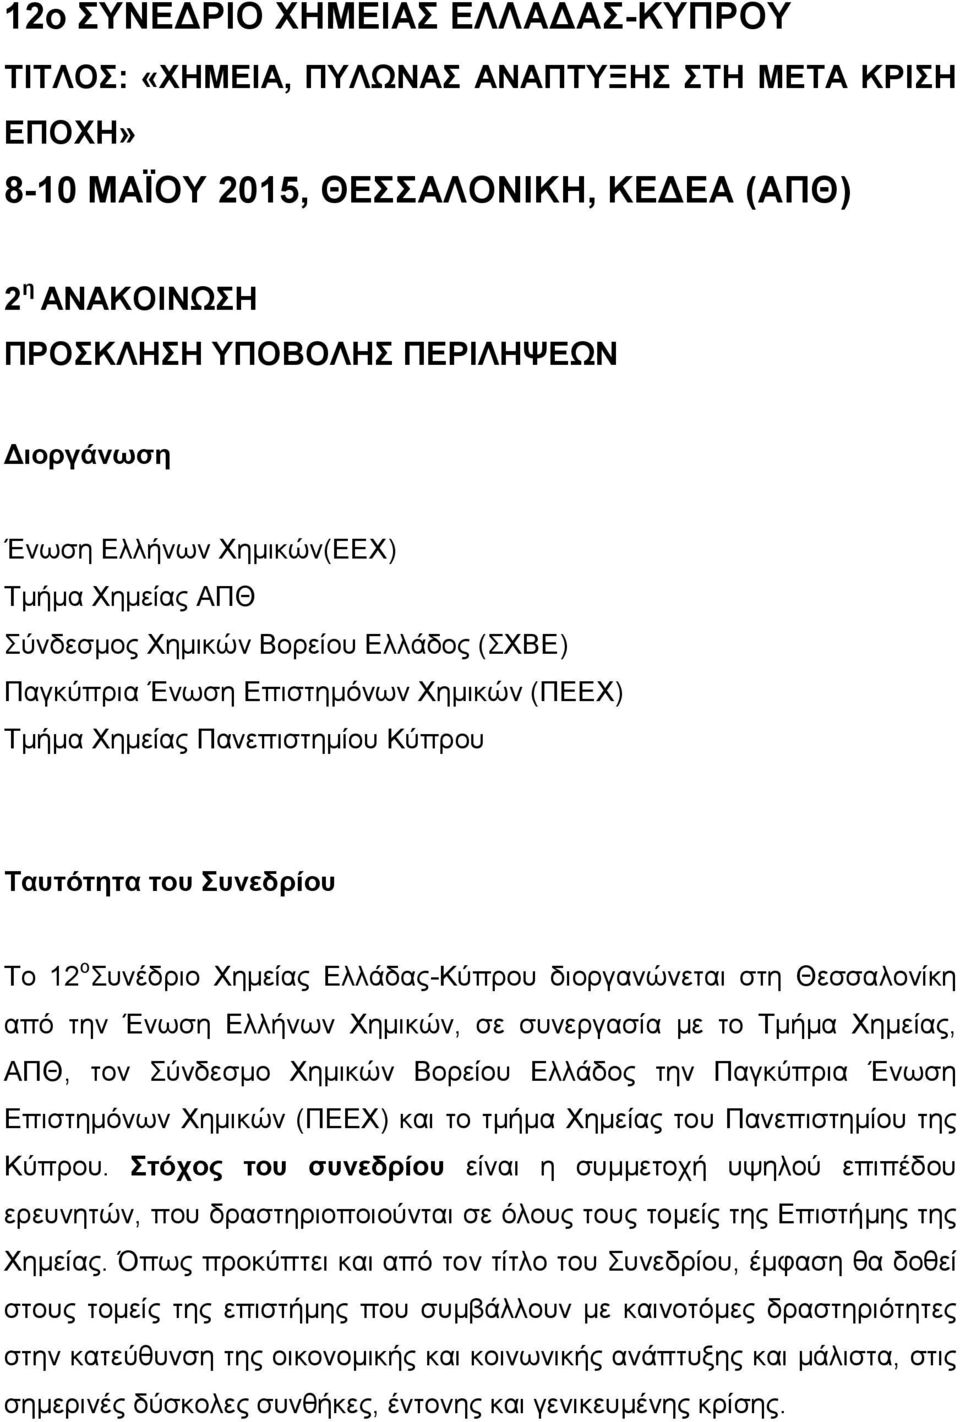 Χημείας Ελλάδας-Κύπρου διοργανώνεται στη Θεσσαλονίκη από την Ένωση Ελλήνων Χημικών, σε συνεργασία με το Τμήμα Χημείας, ΑΠΘ, τον Σύνδεσμο Χημικών Βορείου Ελλάδος την Παγκύπρια Ένωση Επιστημόνων